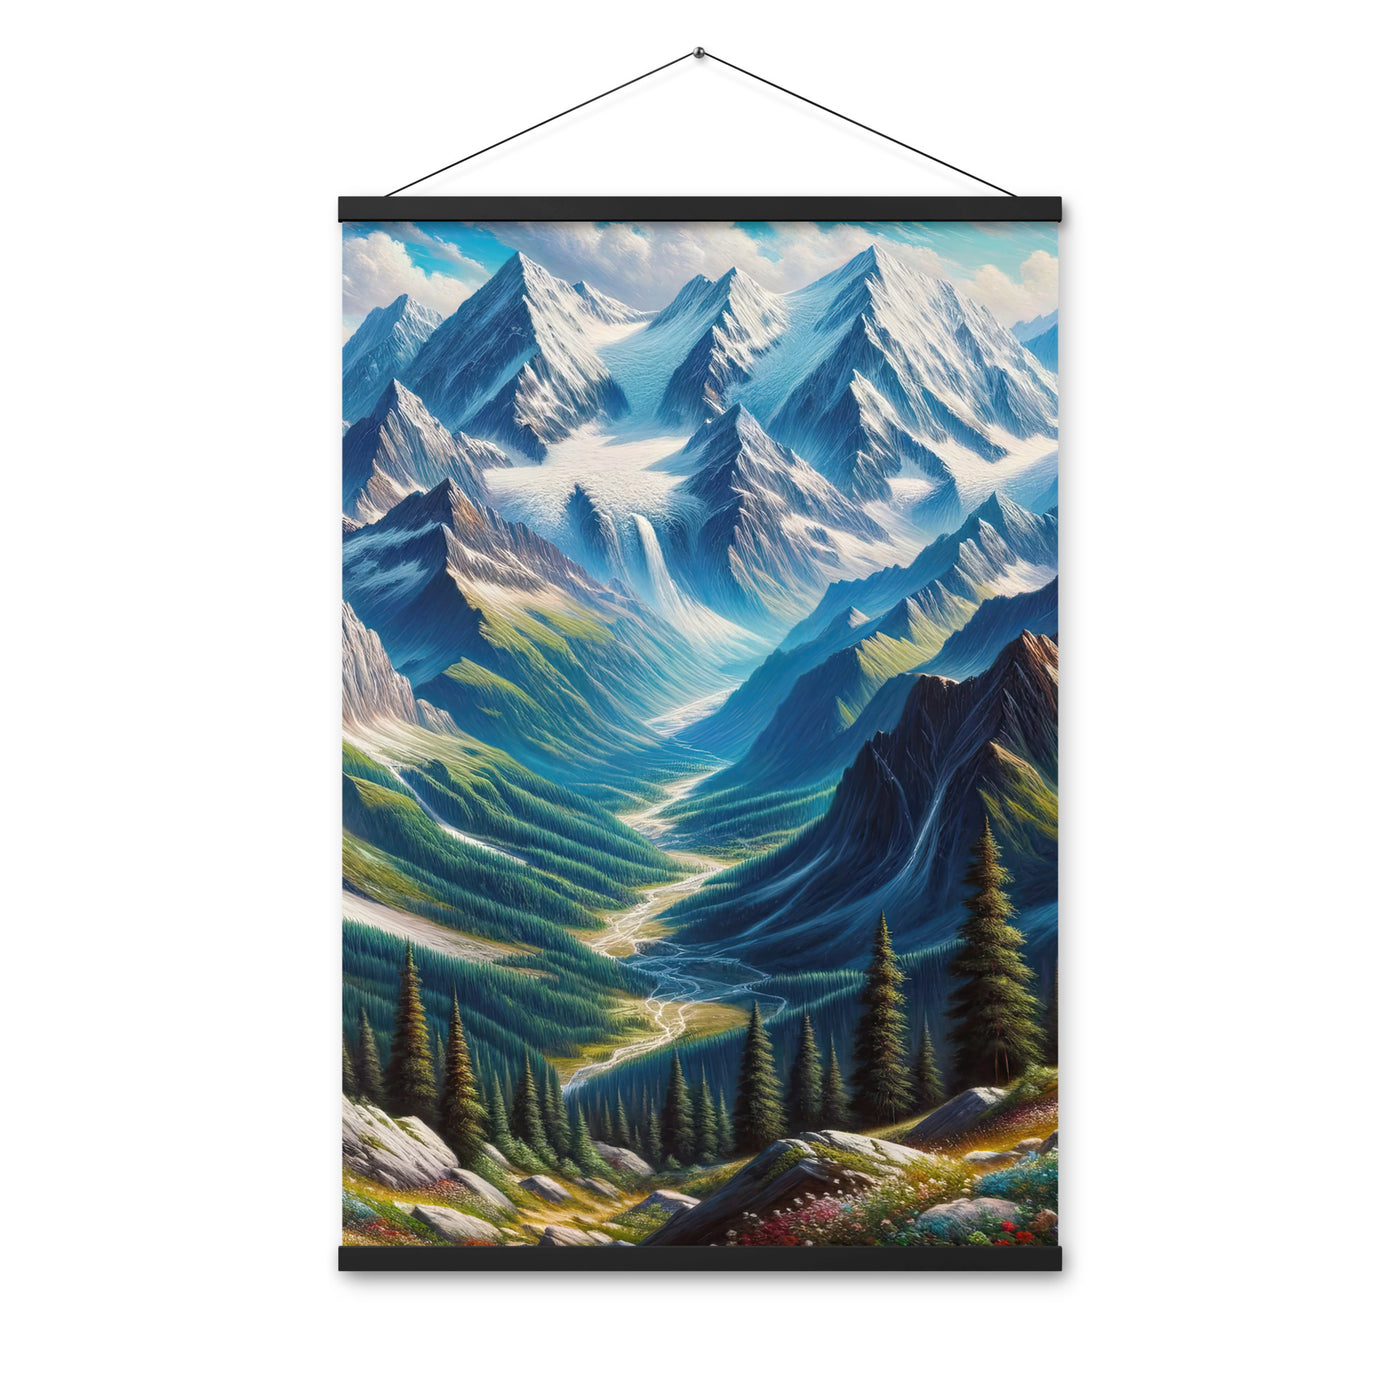 Panorama-Ölgemälde der Alpen mit schneebedeckten Gipfeln und schlängelnden Flusstälern - Premium Poster mit Aufhängung berge xxx yyy zzz 61 x 91.4 cm